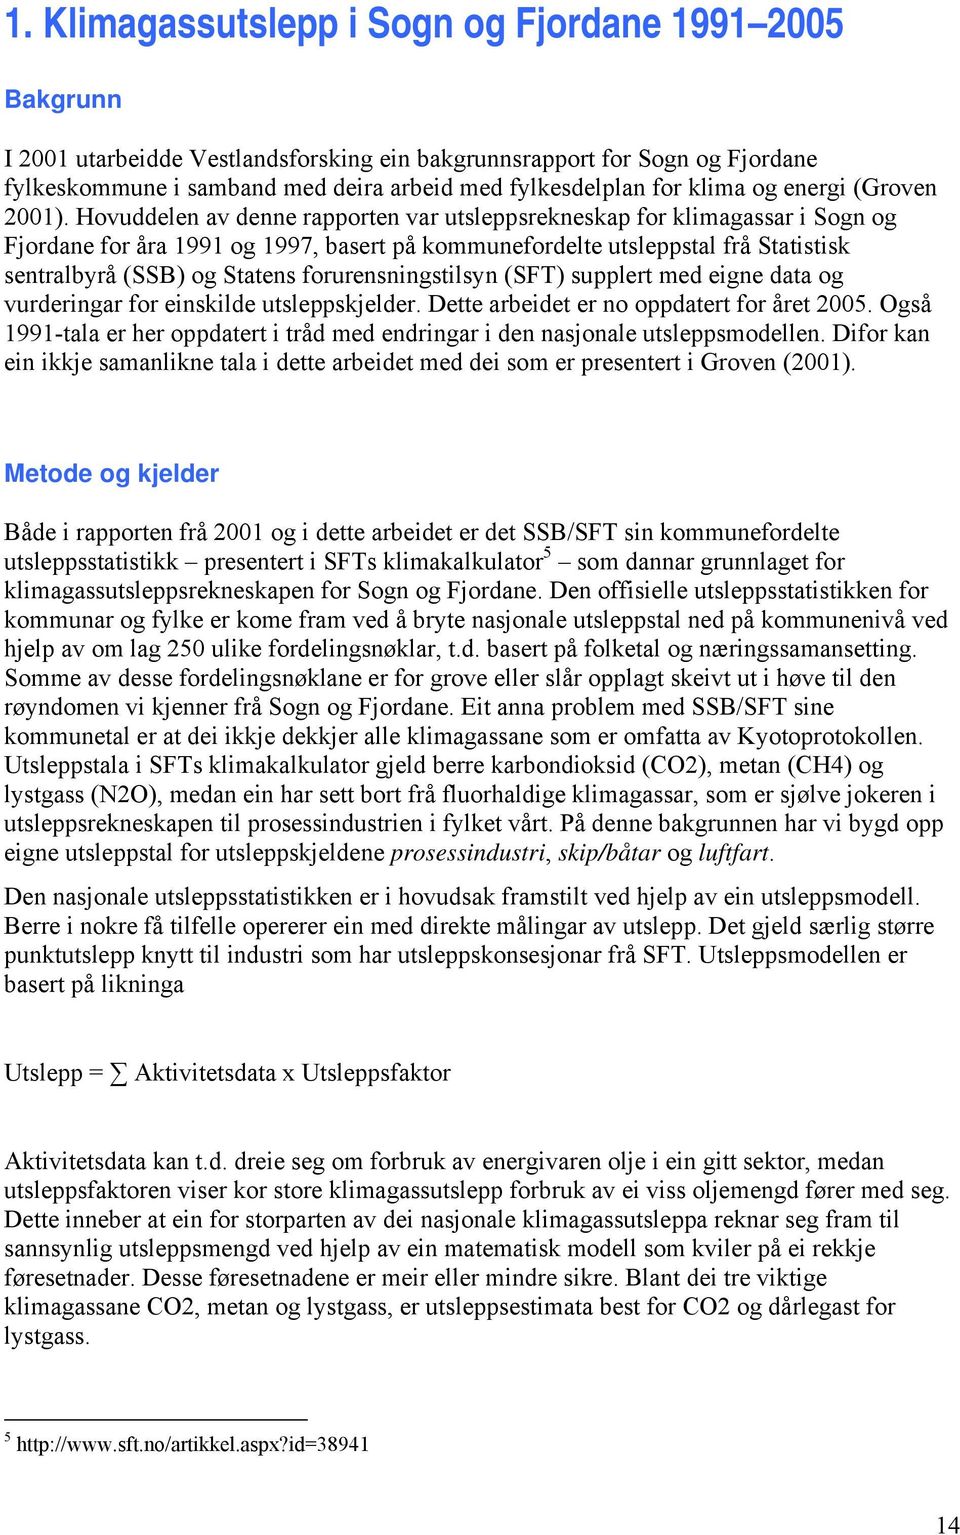 Hovuddelen av denne rapporten var utsleppsrekneskap for klimagassar i Sogn og Fjordane for åra 1991 og 1997, basert på kommunefordelte utsleppstal frå Statistisk sentralbyrå (SSB) og Statens